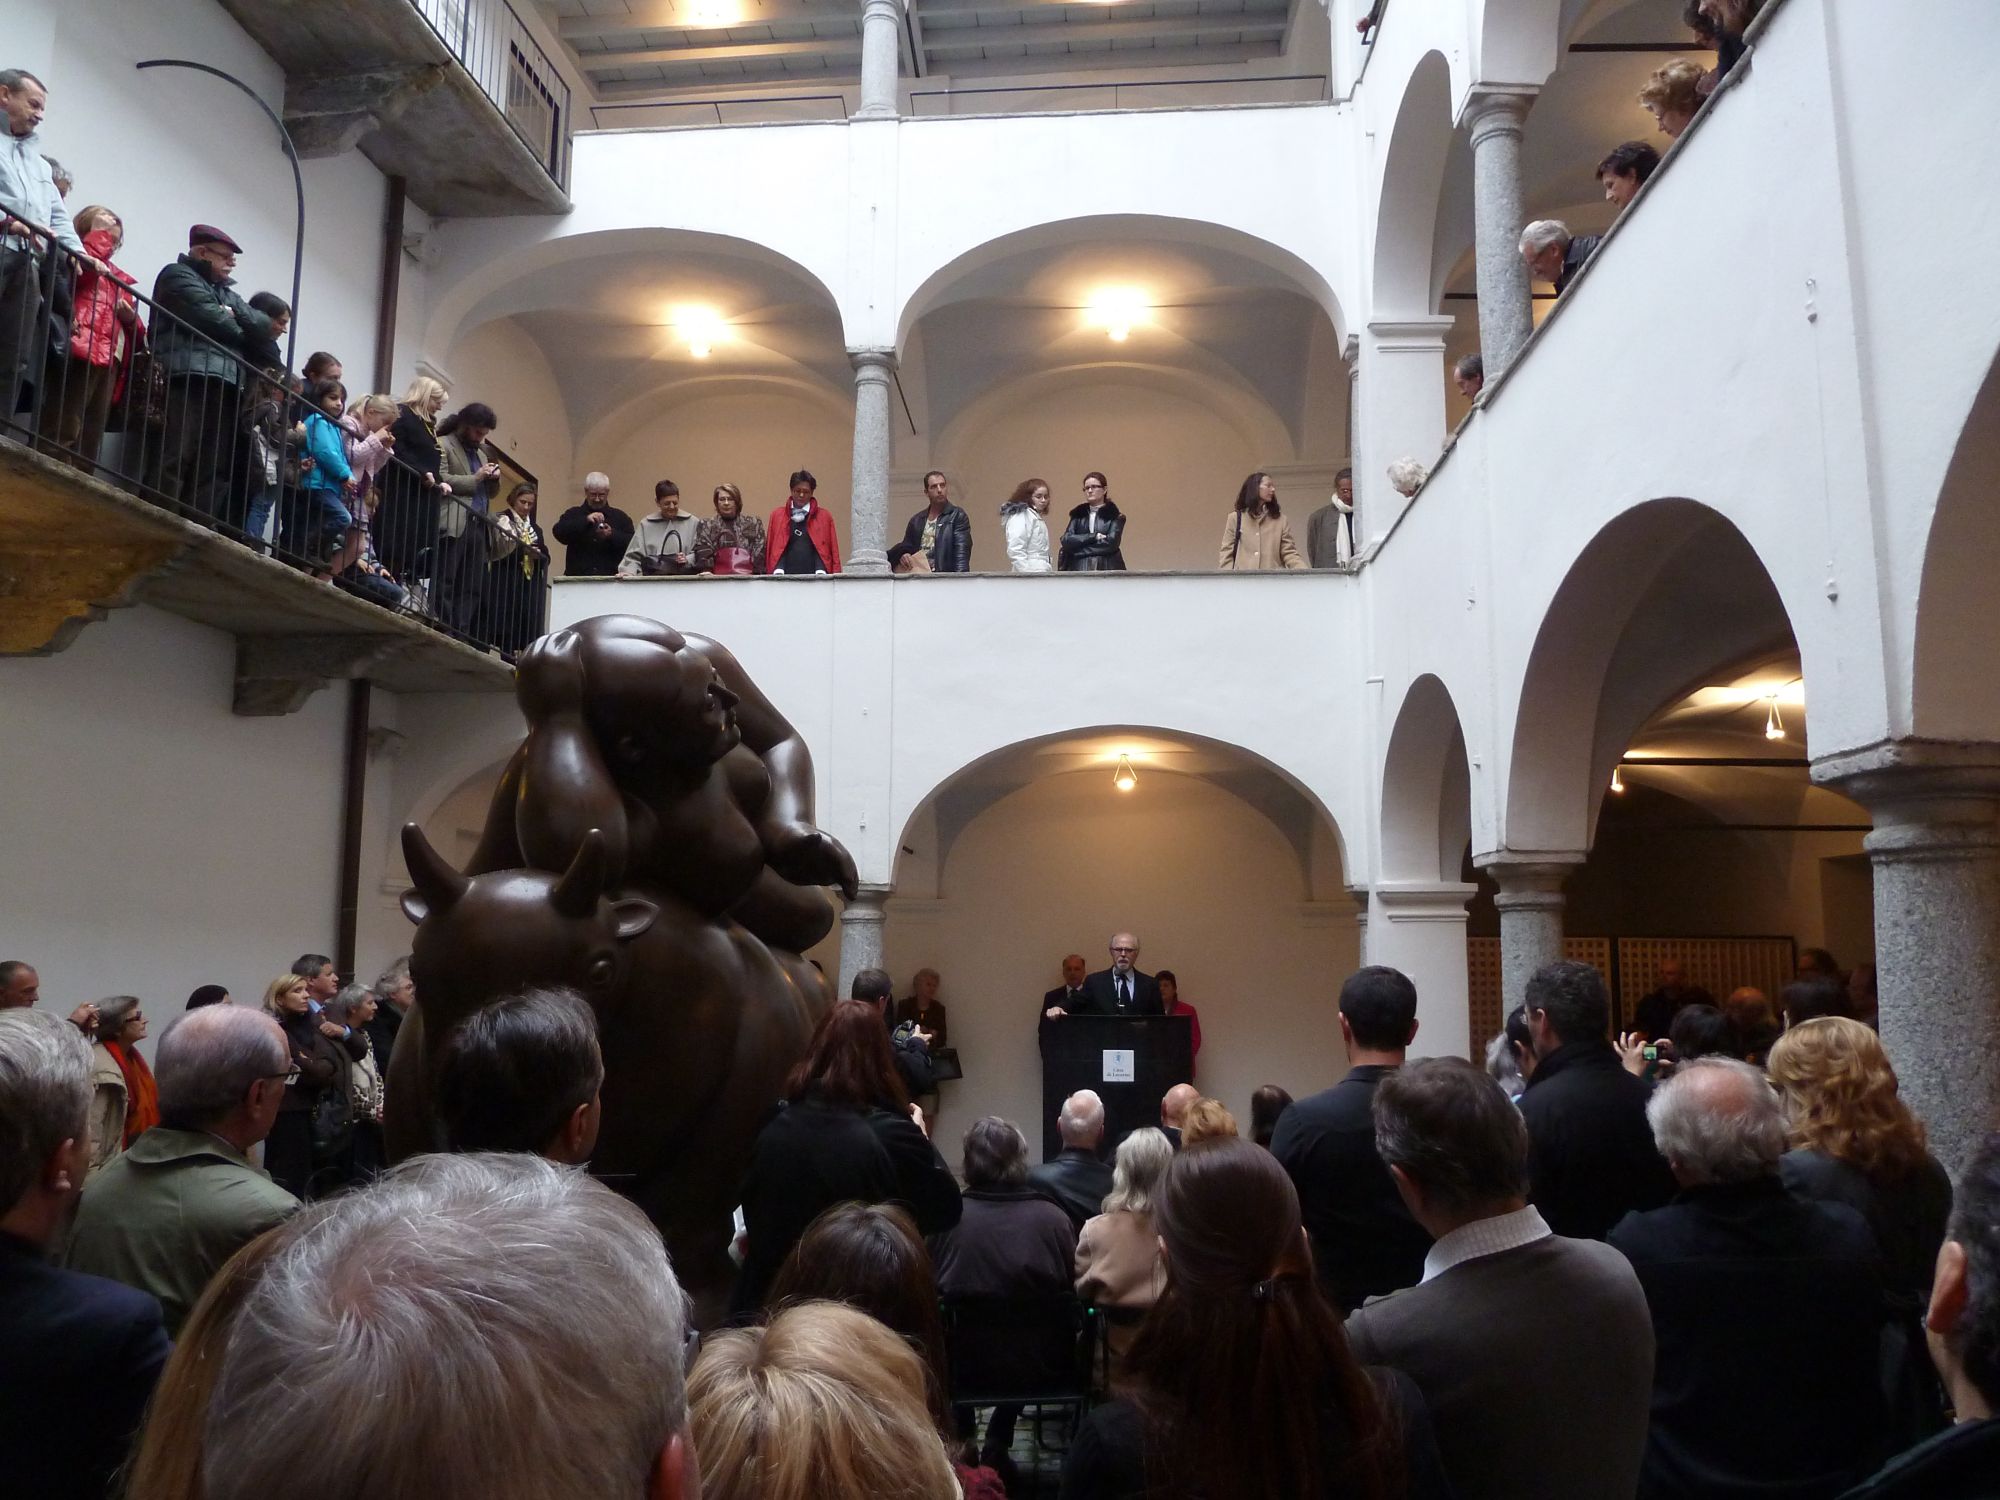 Fernando Botero, Vernisage alla Casa Rusca di Locarno, 20 marzo 2011